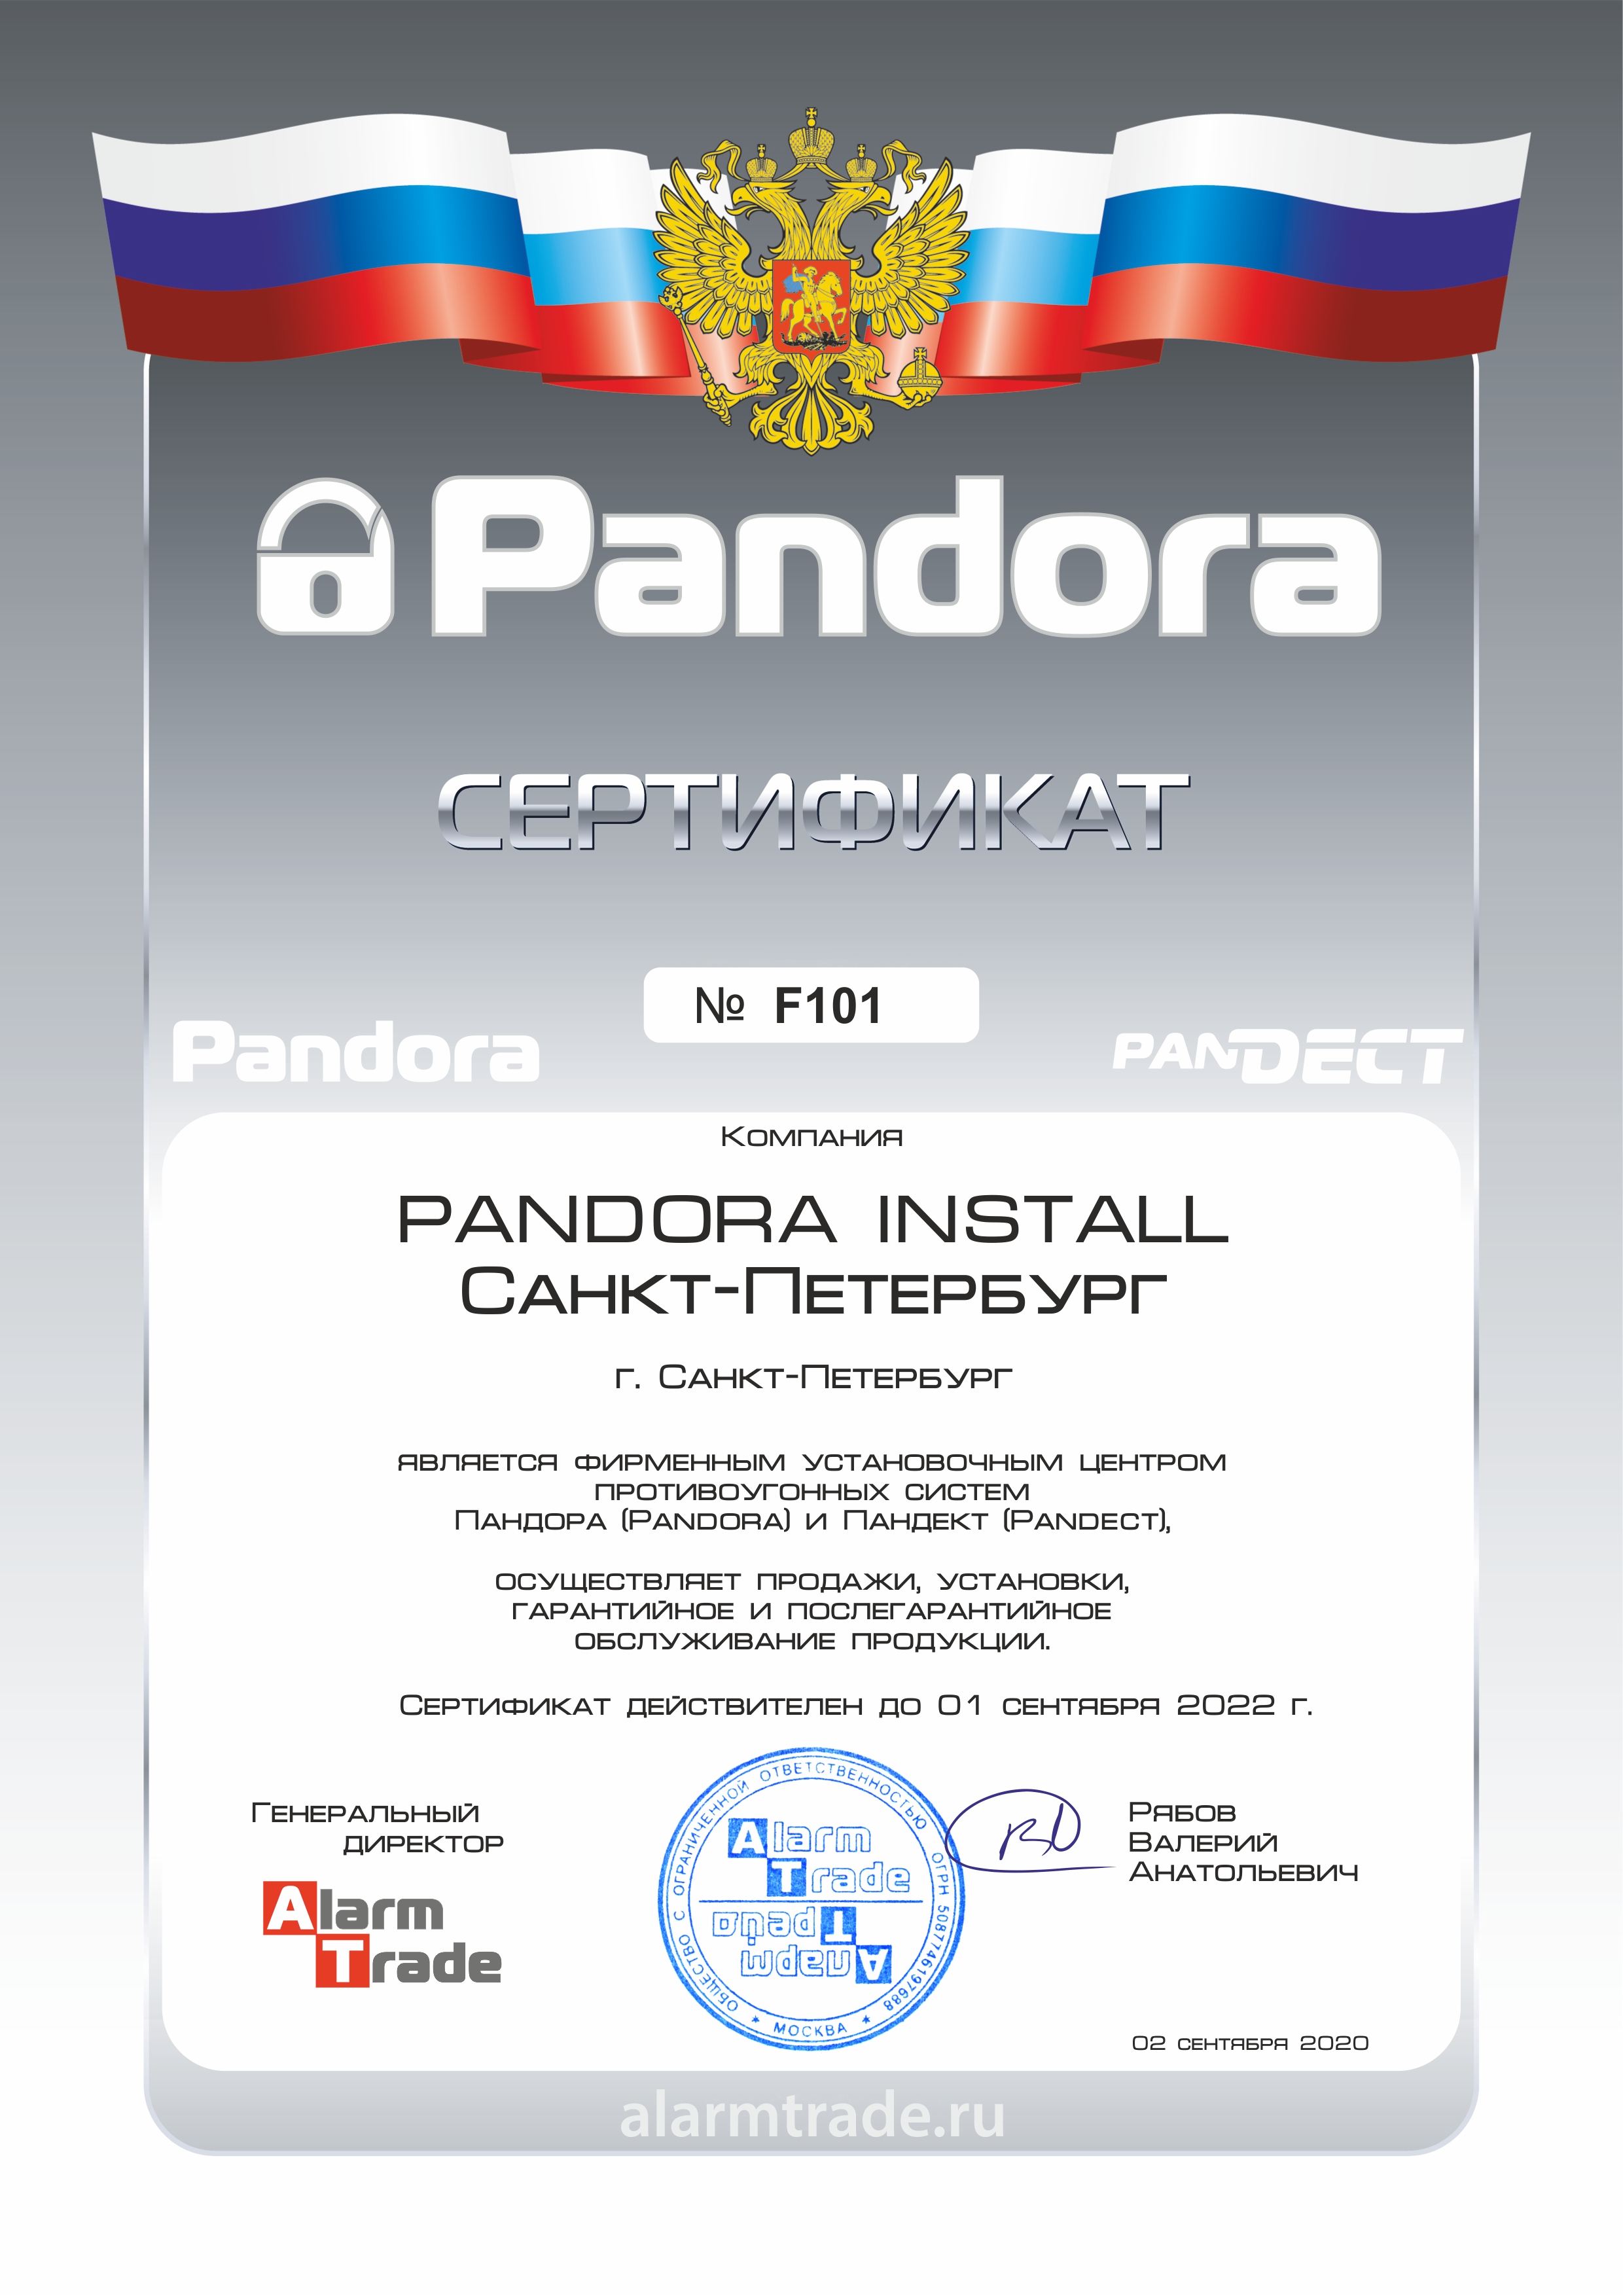 Сертификат официального центра Pandora и Pandect в Санкт-Петербурге